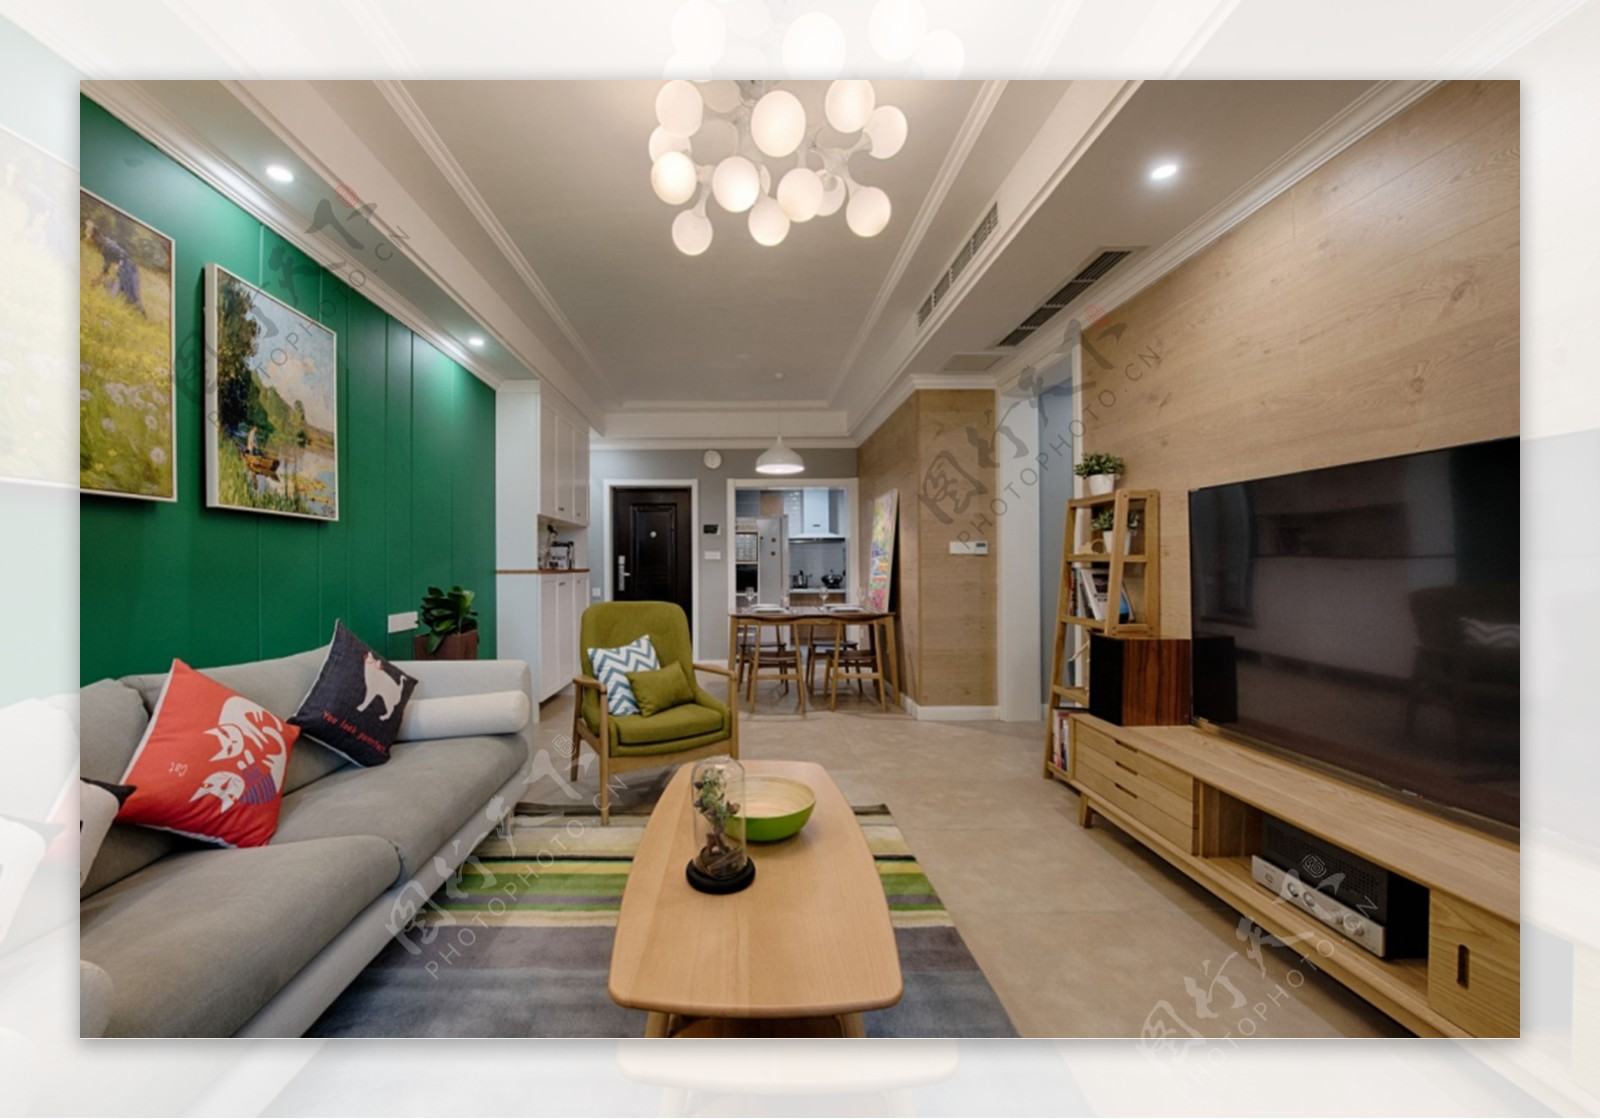 现代时尚客厅绿色背景墙室内装修效果图